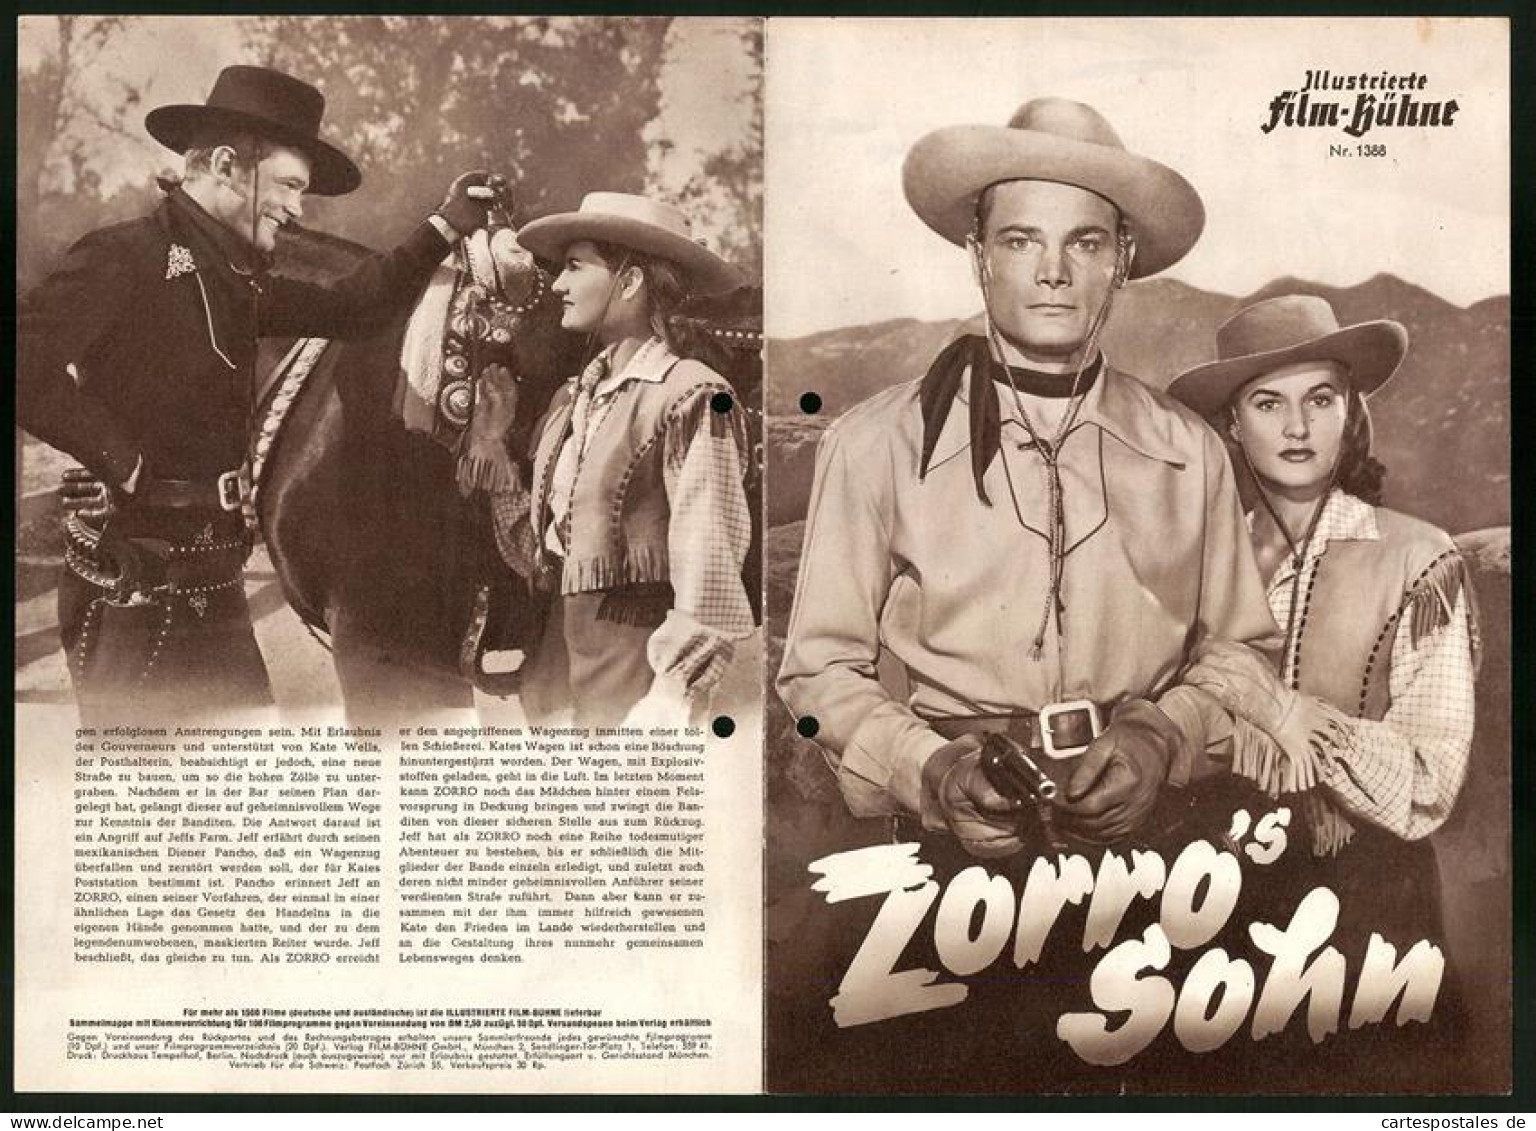 Filmprogramm IFB Nr. 1388, Zorro`s Sohn, George Turner, Peggy Stewart, Regie: Spencer Bennet, Fred C. Brannon  - Magazines